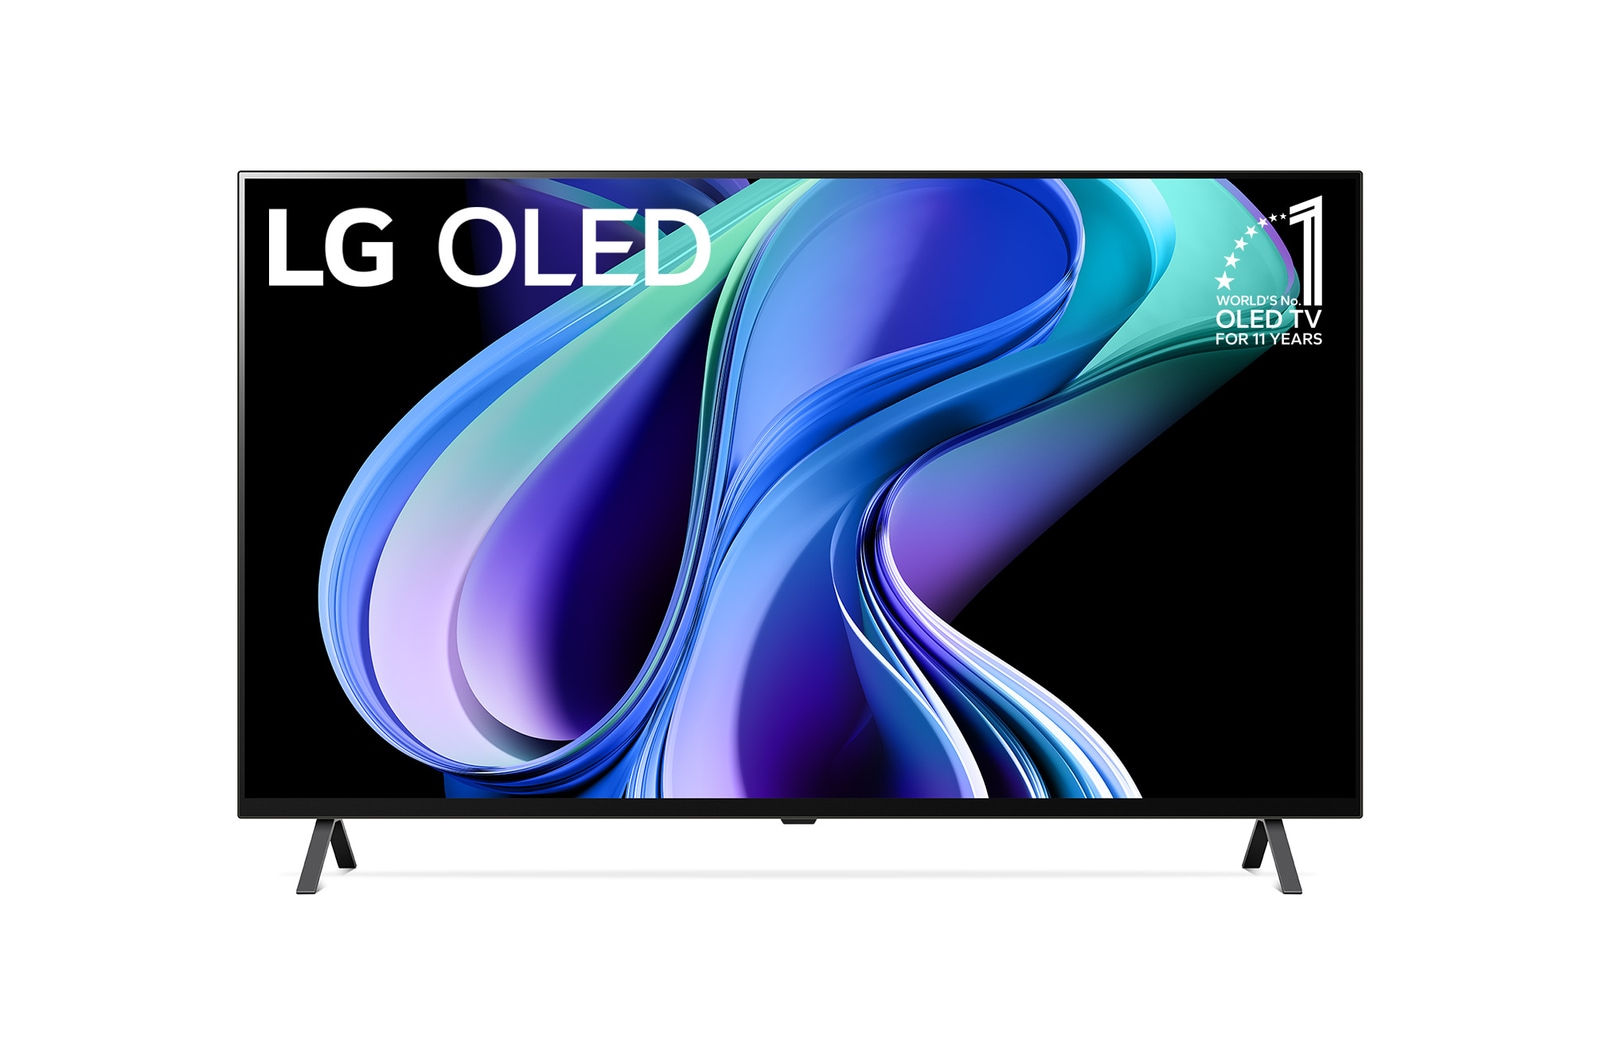 LG 【Costco限定】65V型 4K有機ELテレビ OLED65A3PJA, OLED65A3PJA